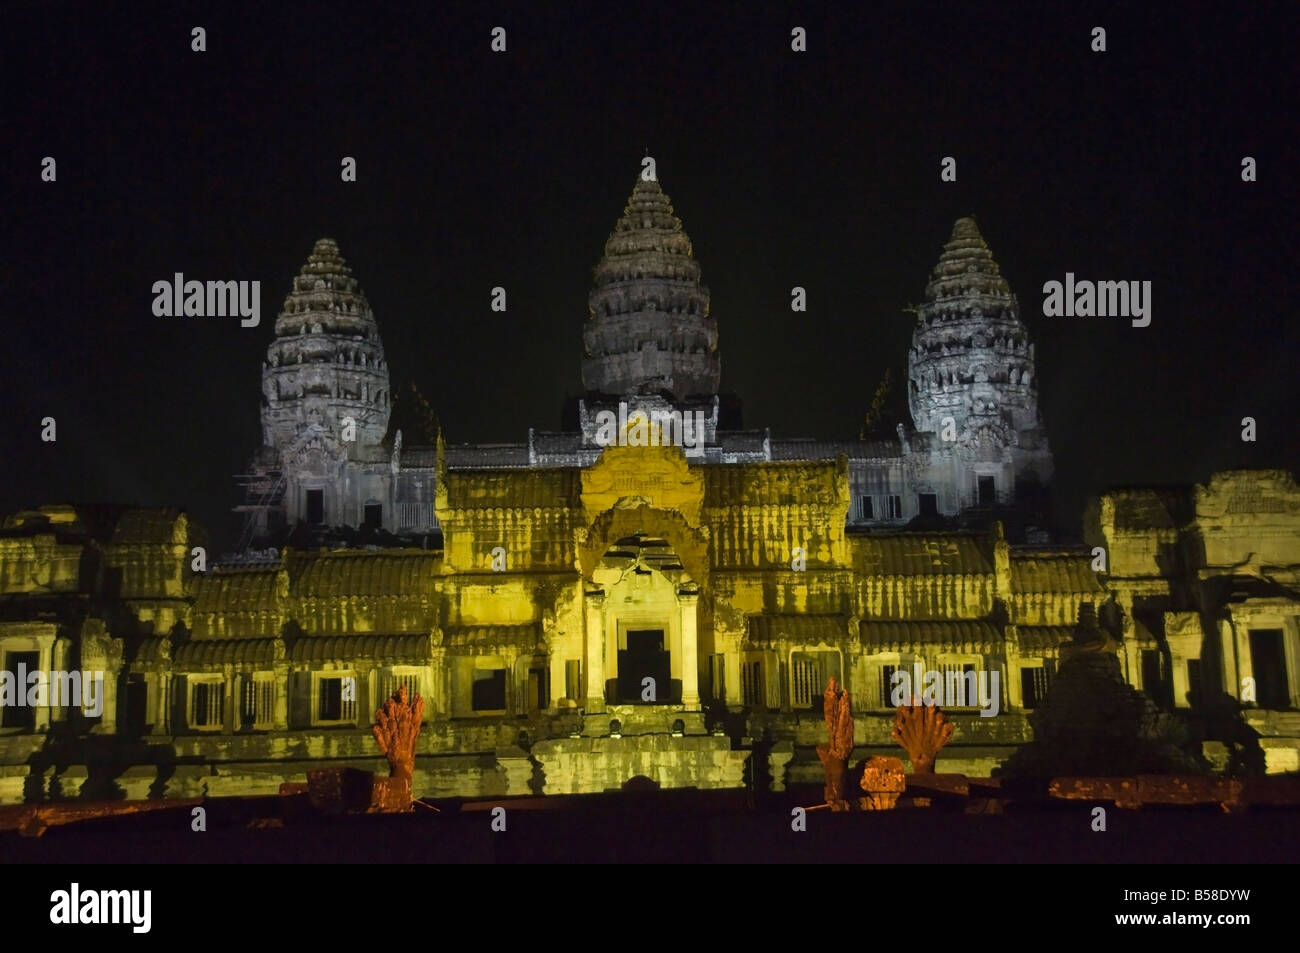 Angkor Wat Temple, éclairé d'une lumière spéciale, Angkor, Siem Reap, Cambodge, Indochine, Asie du sud-est Banque D'Images